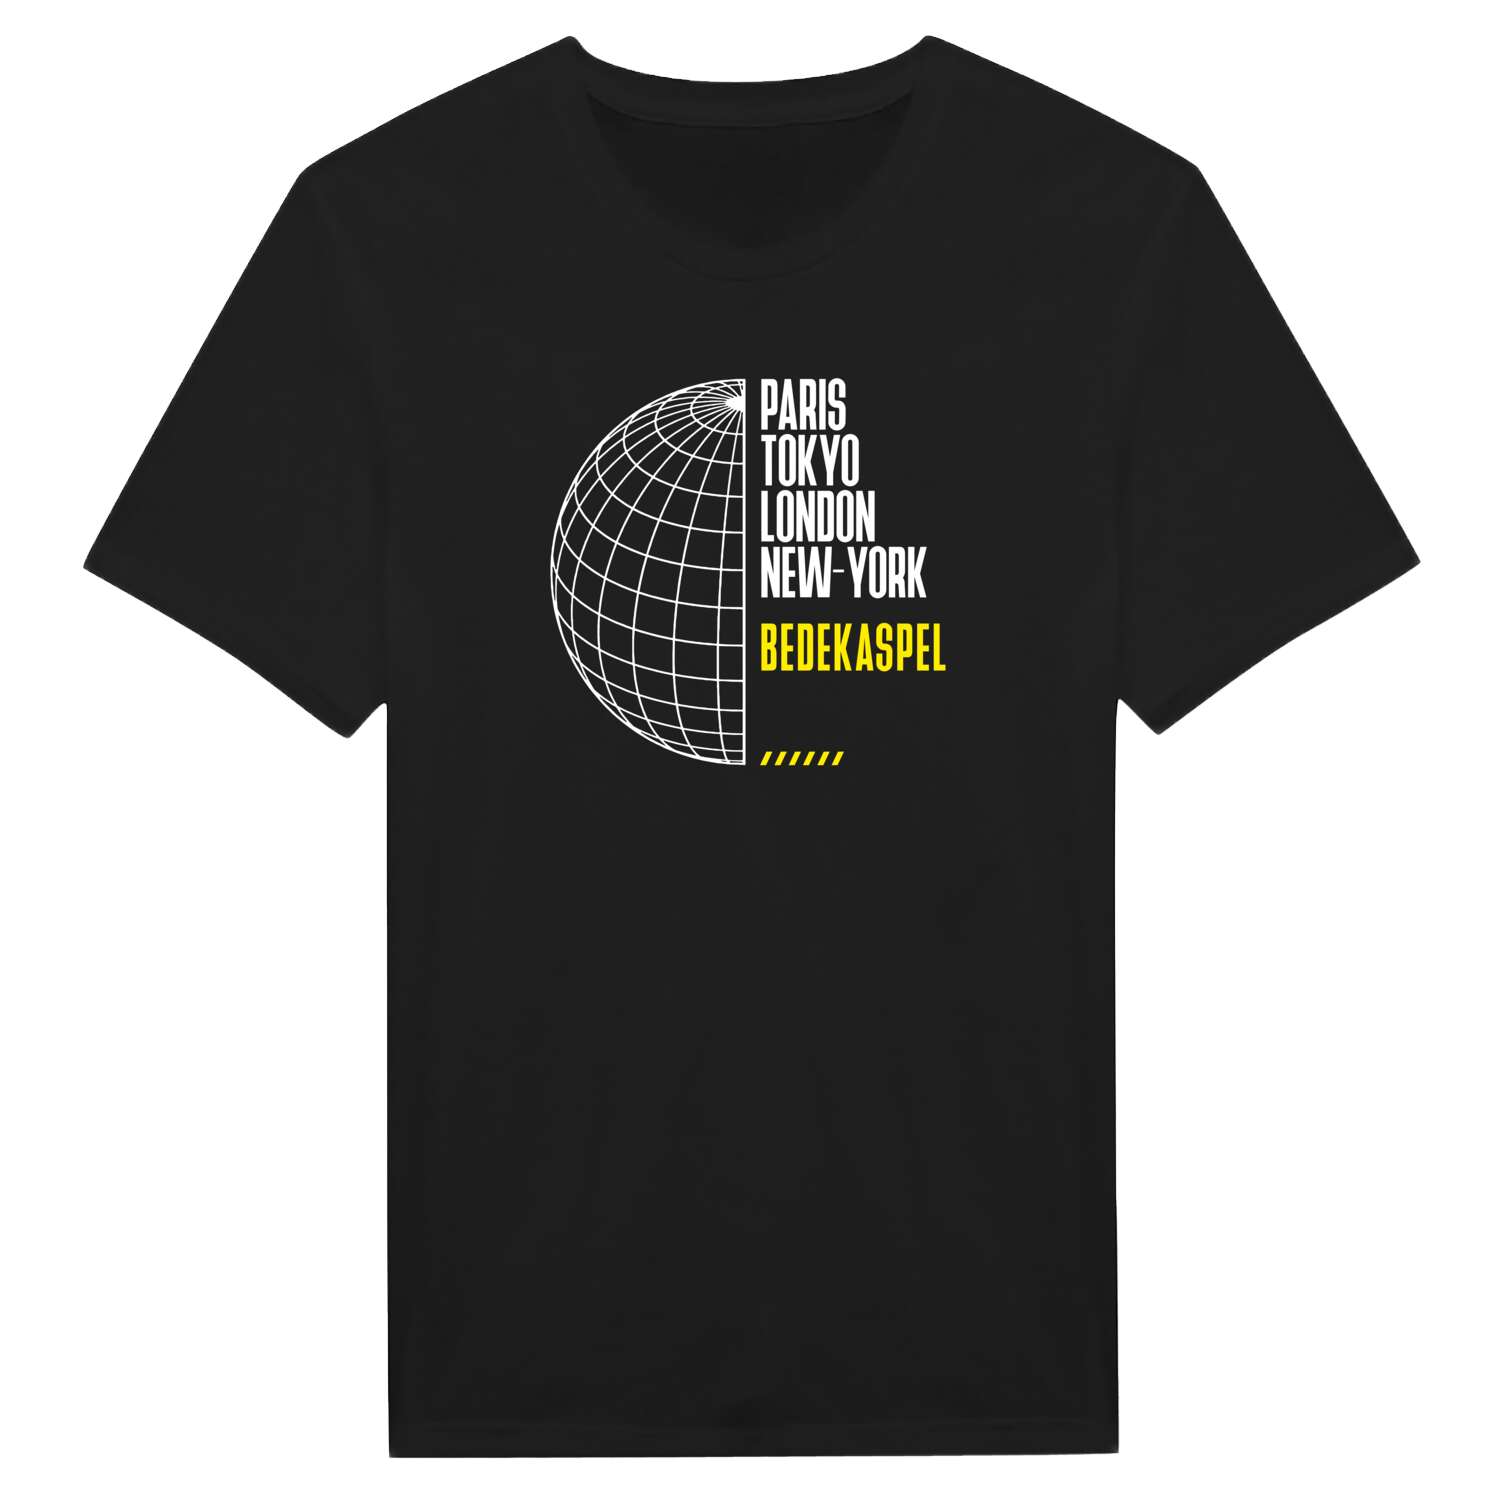 Bedekaspel T-Shirt »Paris Tokyo London«